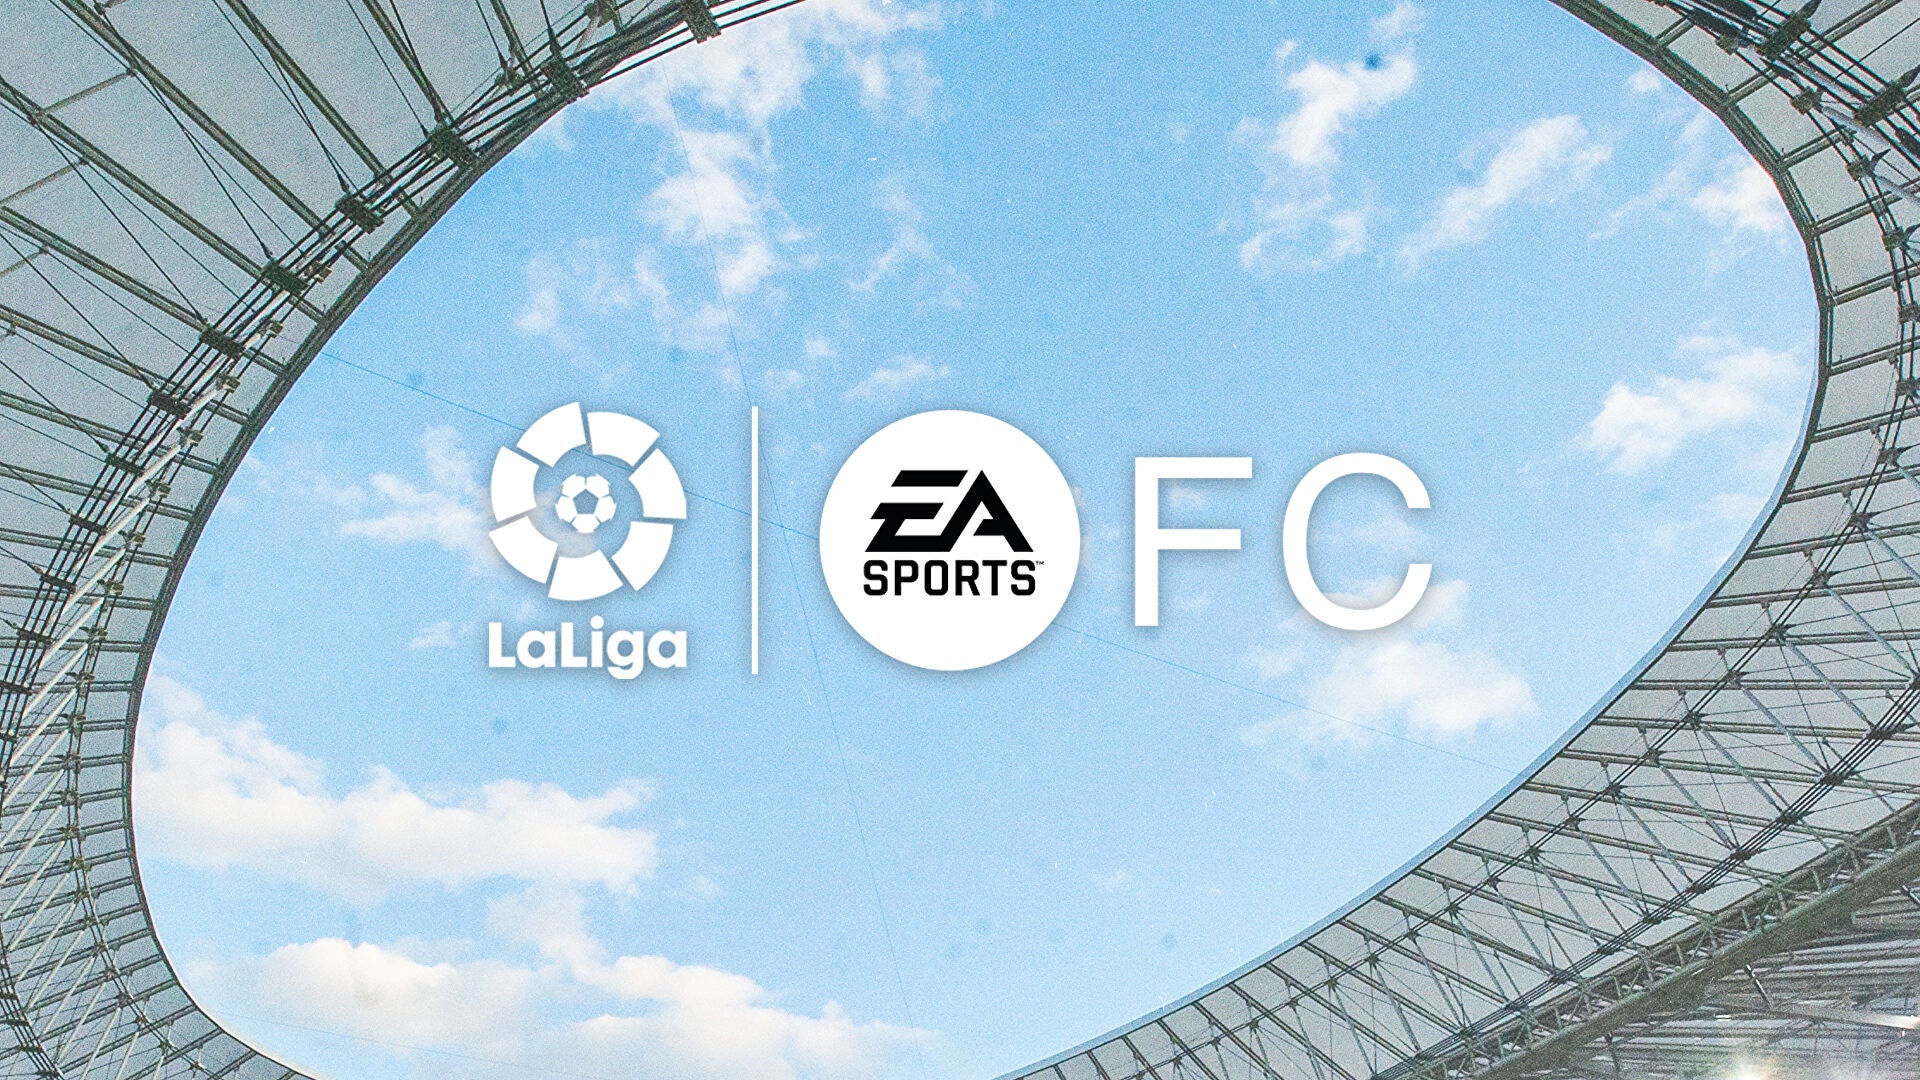 Imagen para EA Sports FC será el principal patrocinador de LaLiga